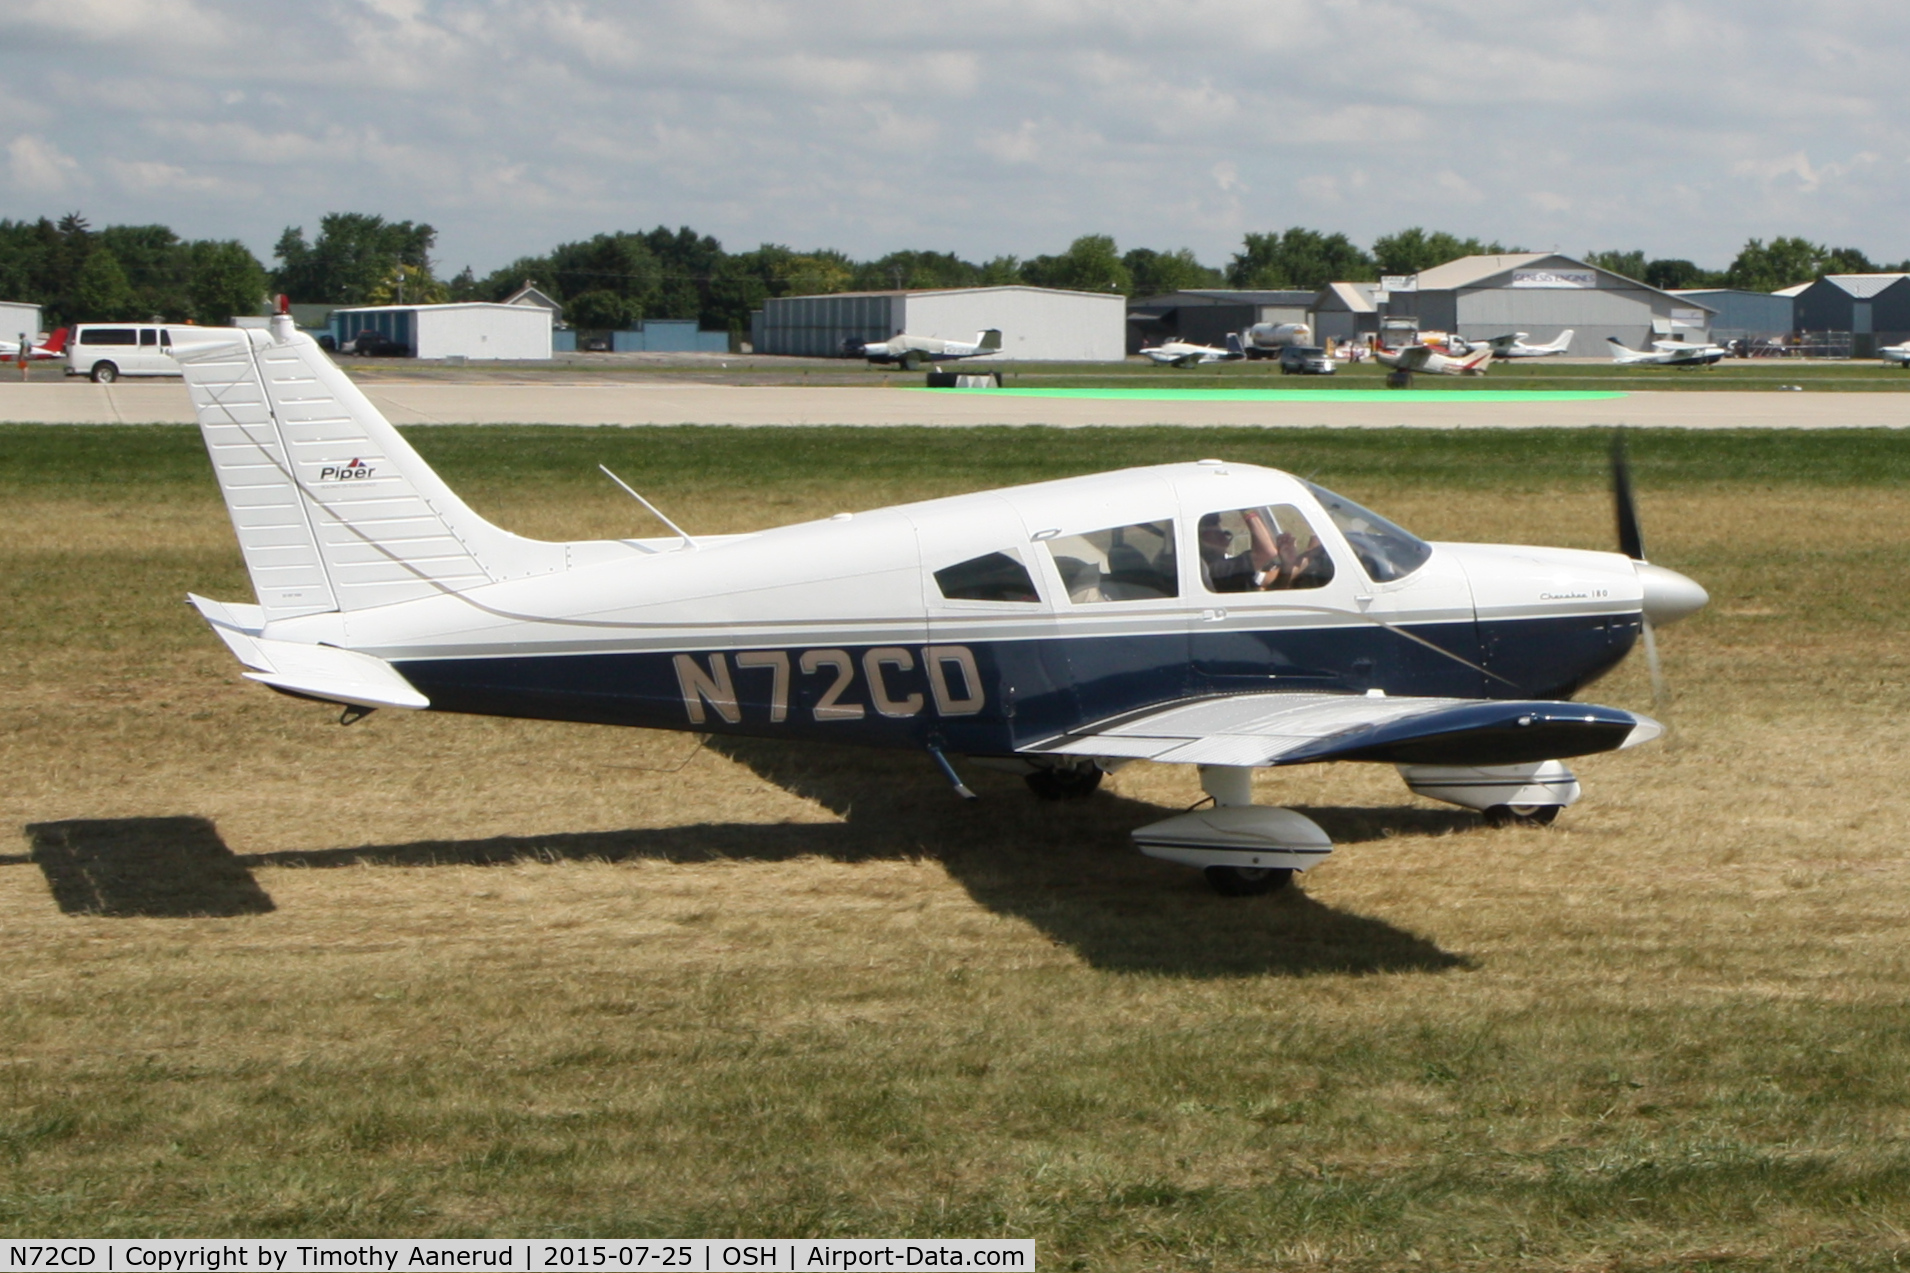 N72CD, 1971 Piper PA-28-180 C/N 28-7205013, 1971 Piper PA-28-180, c/n: 28-7205013, AirVenture 2015